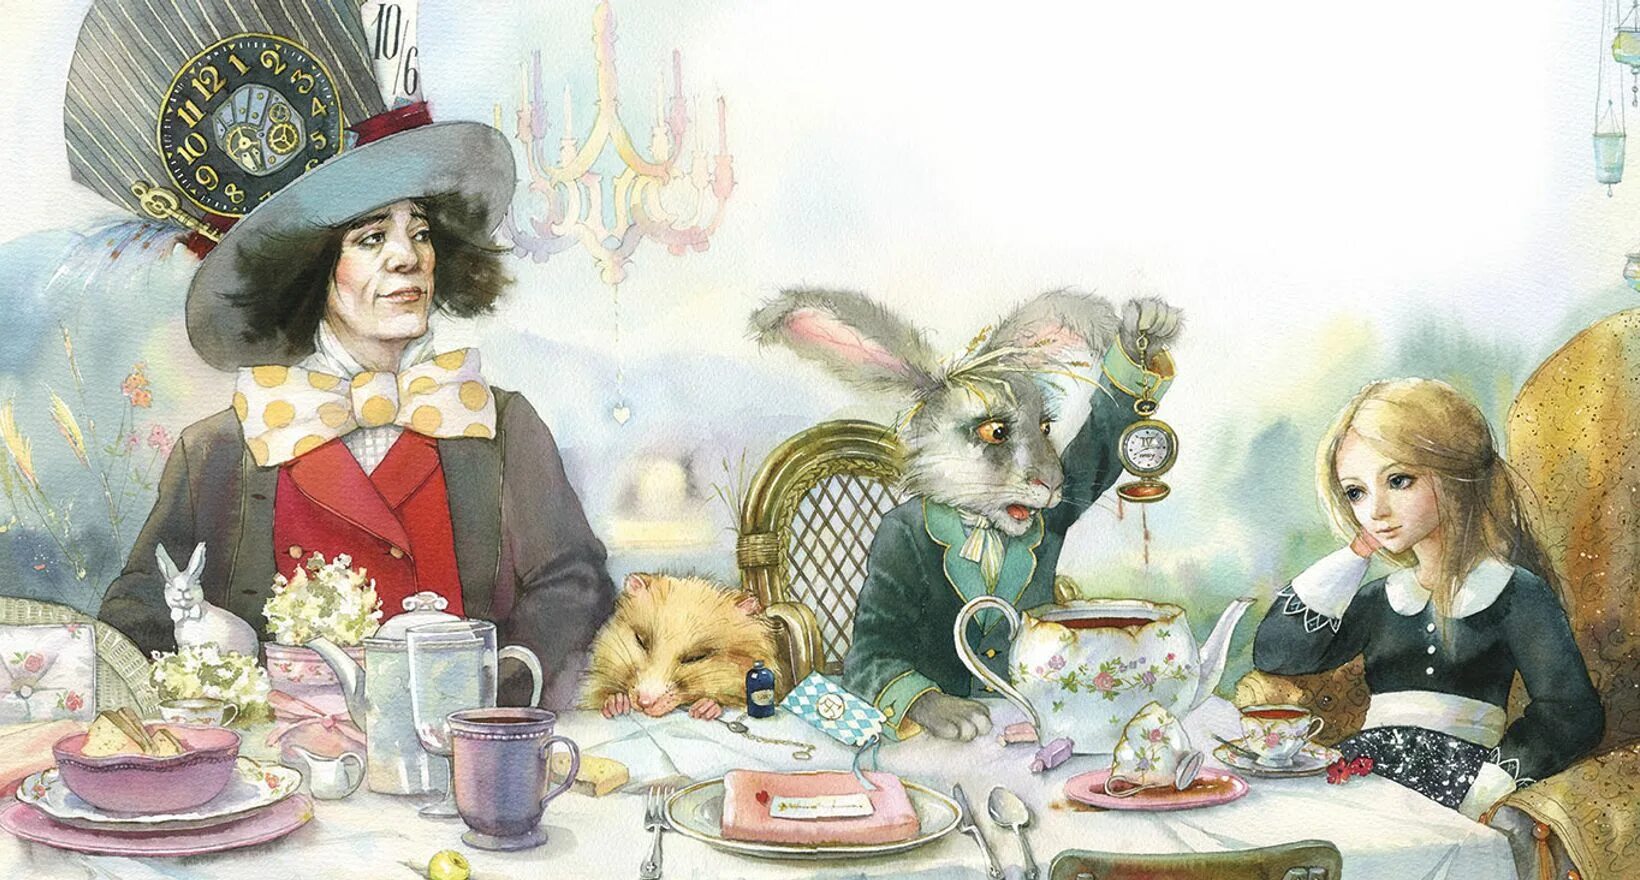 Алиса в стране чудес глава 2. Кэрролл л. "Алиса в стране чудес". Алиса в стране чудес чаепитие. Алиса чаепитие у Шляпника. Алиса в Зазеркалье чаепитие.